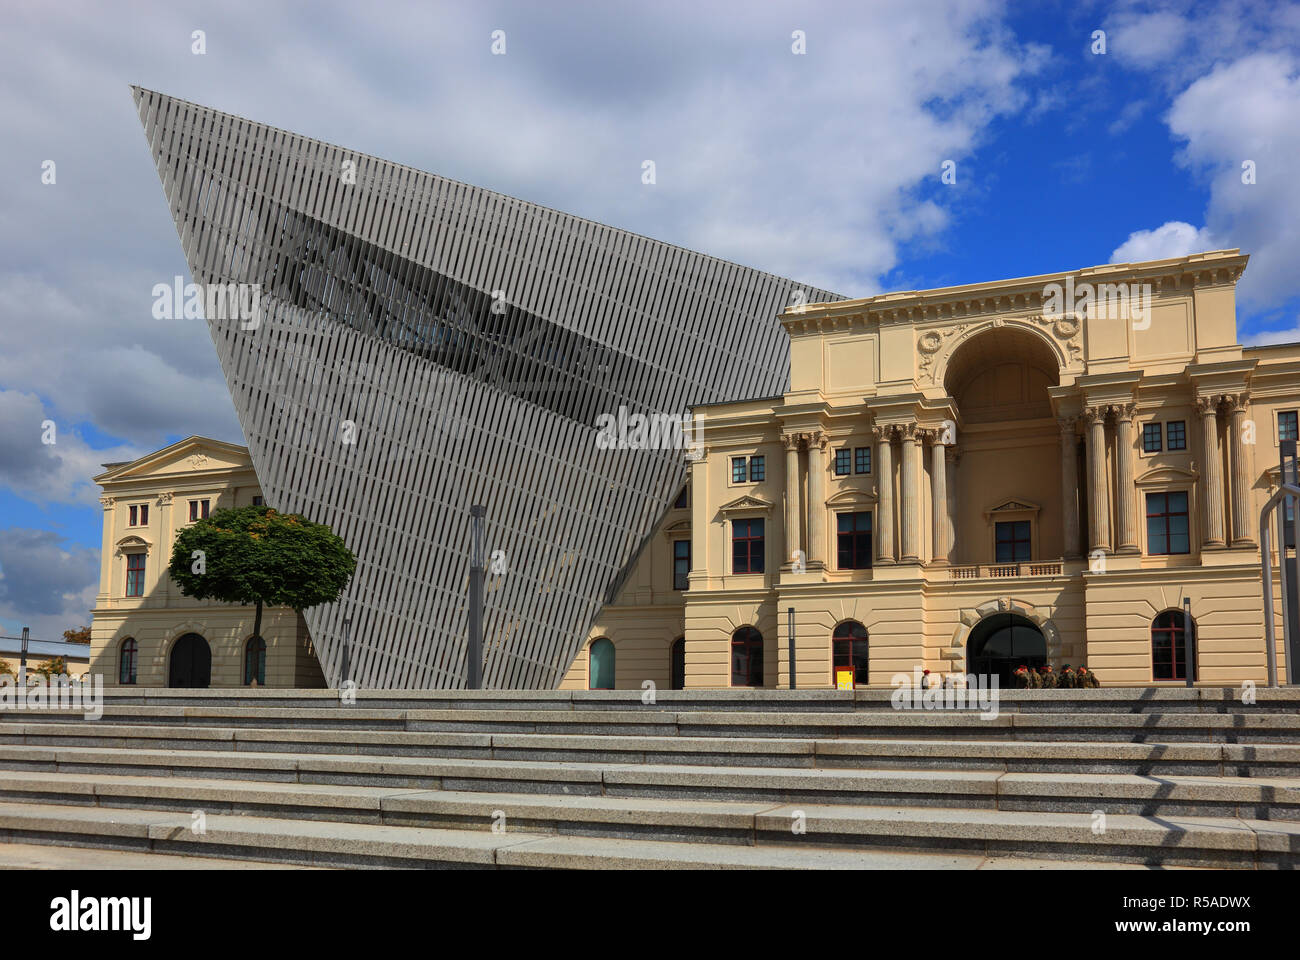 Musée de l'histoire militaire de la Bundeswehr, bâtiment principal avec la sculpture, l'architecte Daniel Libeskind, Dresde, Saxe, Allemagne Banque D'Images